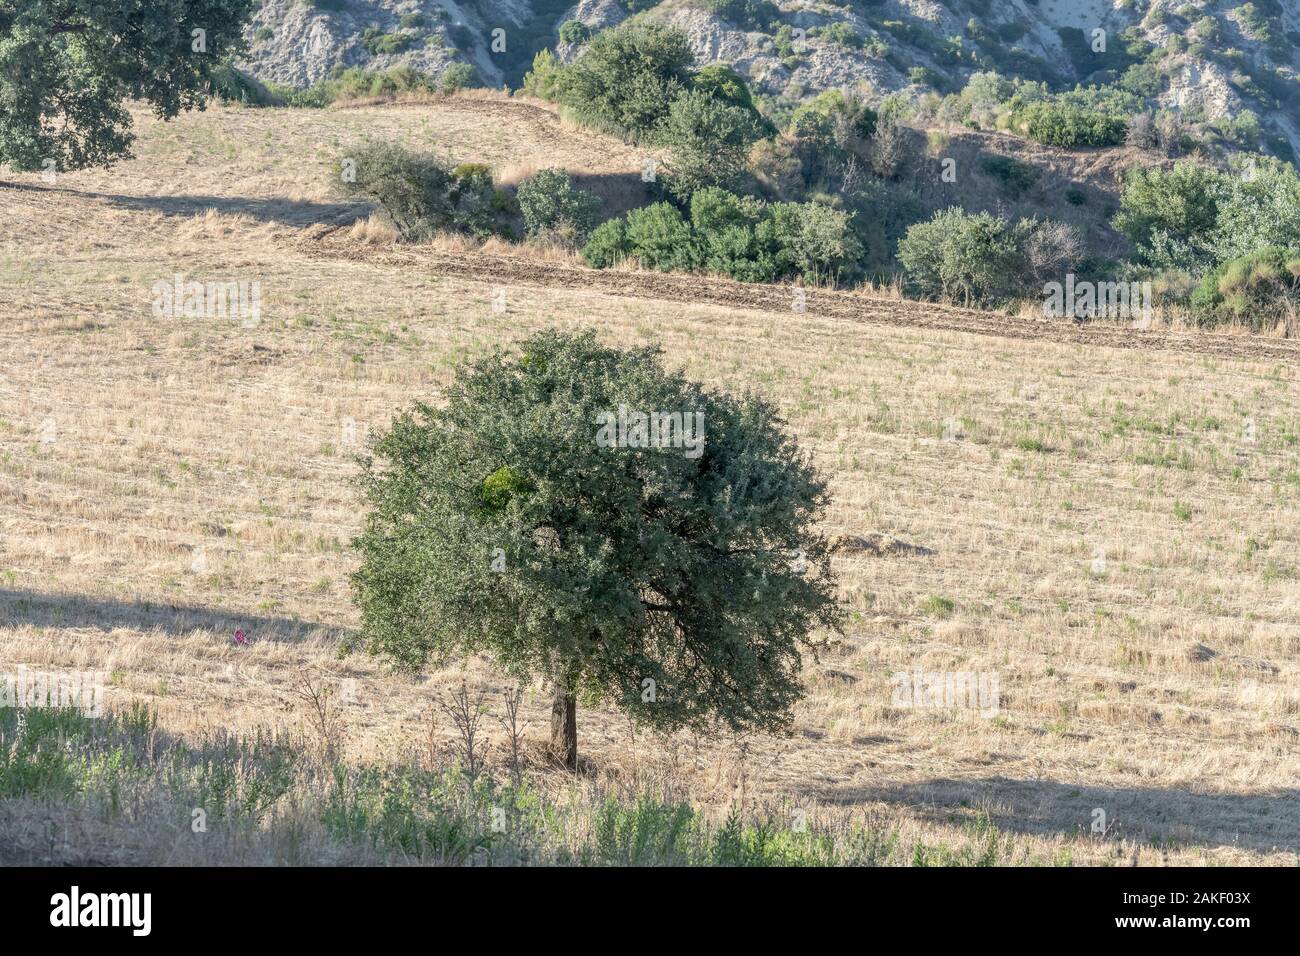 Landschaft des südlichen Apenninen mit einsamen Baum im stoppel Feld, in hellen Sommer Licht in der Nähe von Roccanova, Matera, Basilikata, Italien geschossen Stockfoto